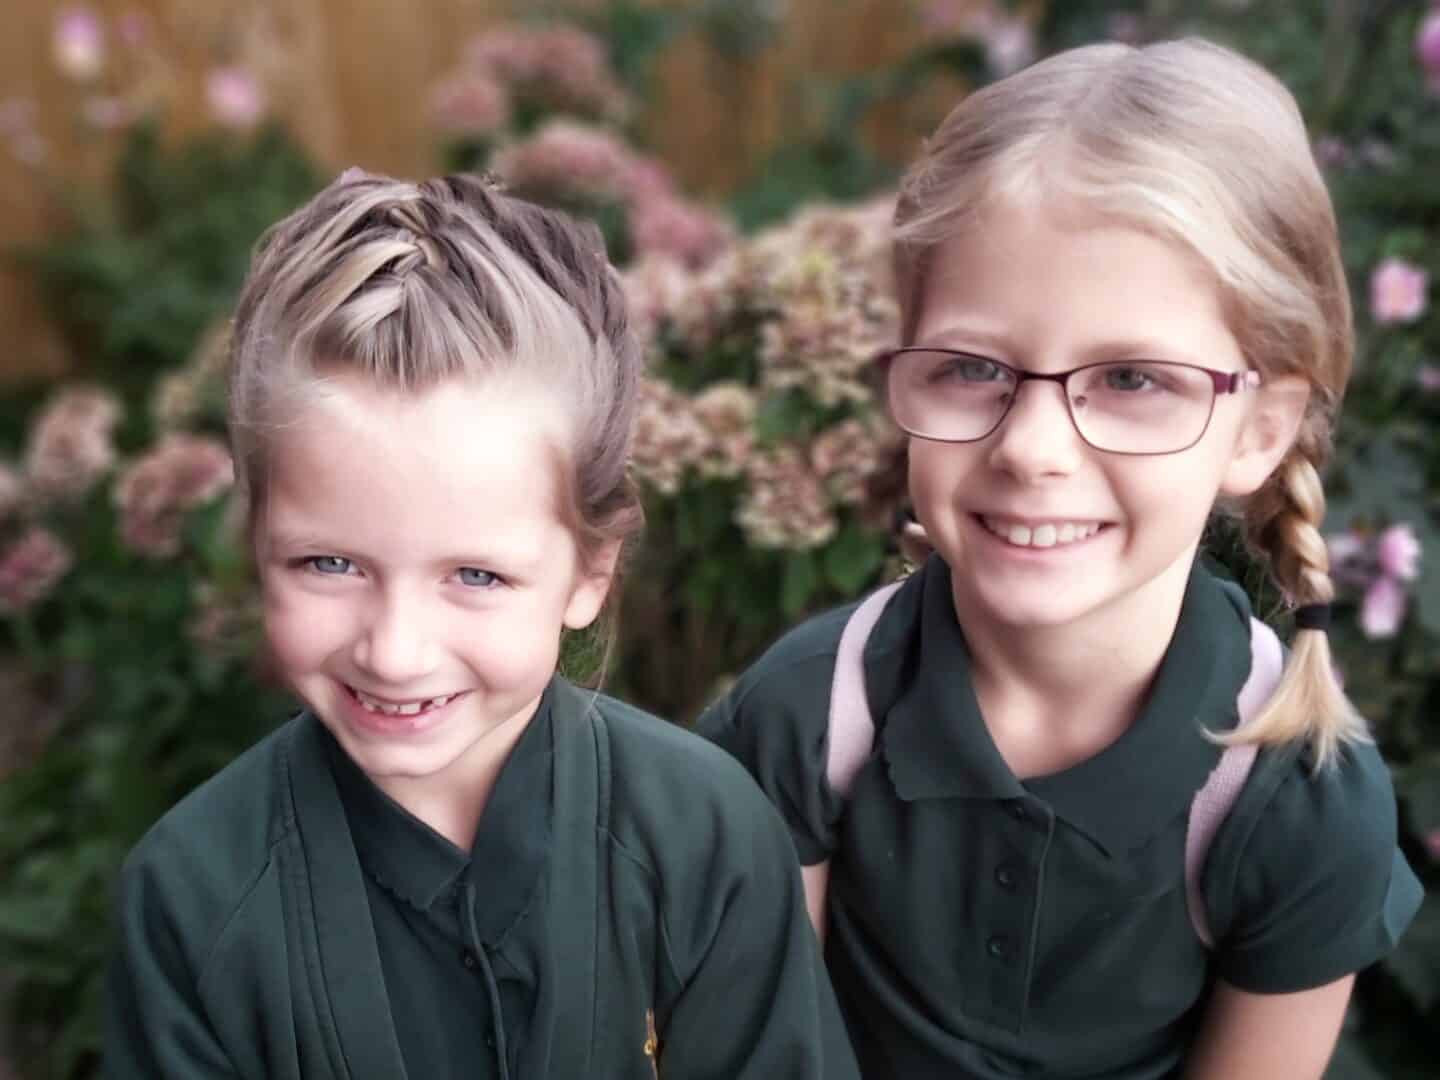 Two girls in school uniform